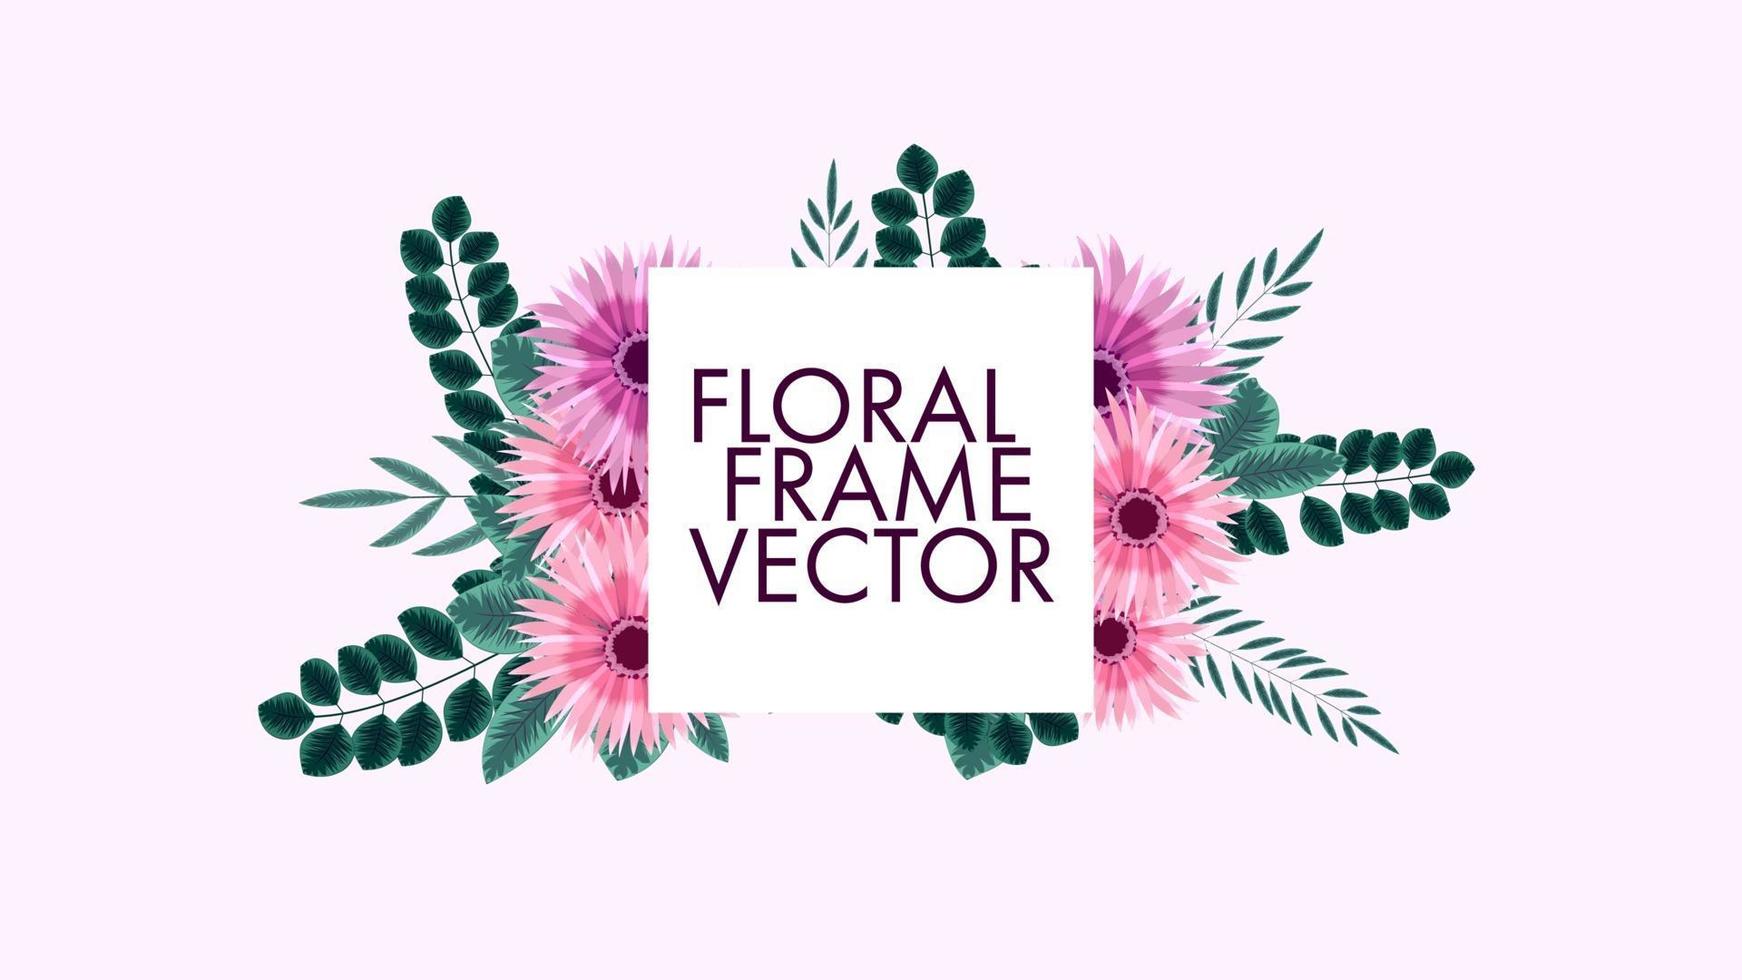 El precio de venta de la etiqueta de fondo de los marcos florales coloridos lujosos invita vector